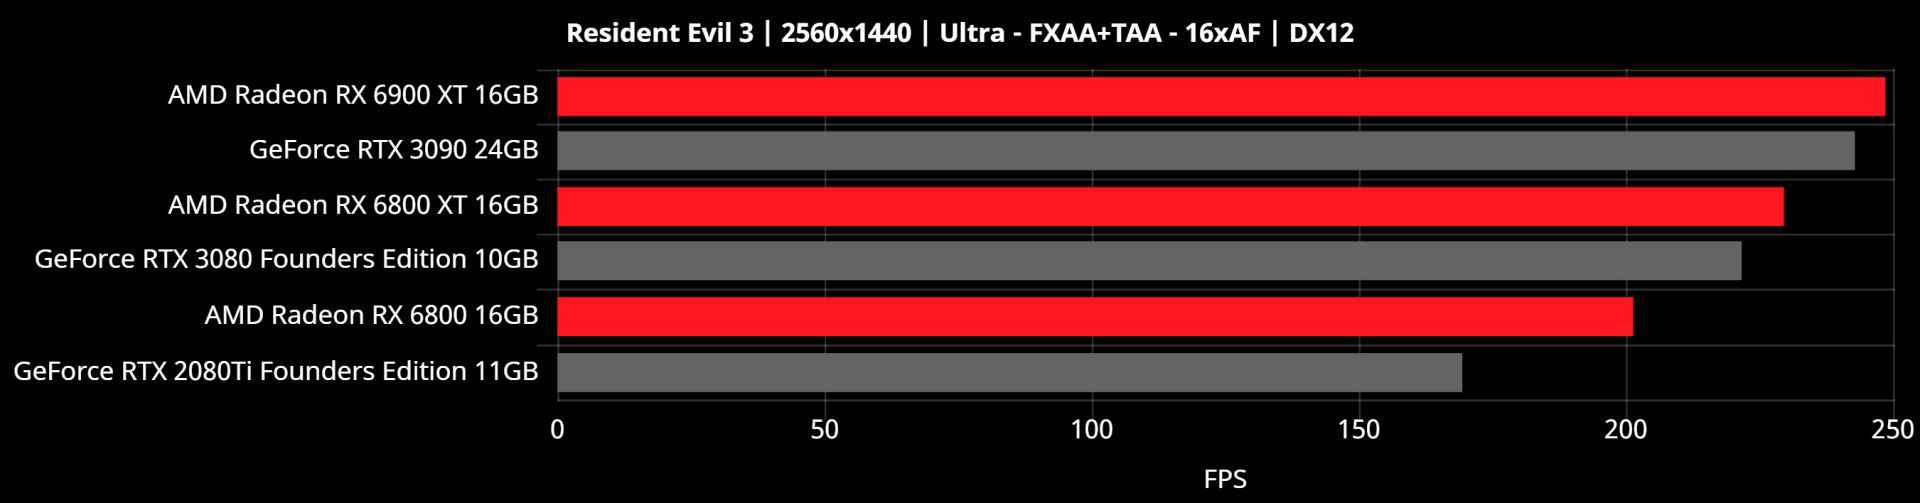 بنچمارک 1440p ای ام دی بیگ نوی RX 6000 بازی رزیدنت ایول 3